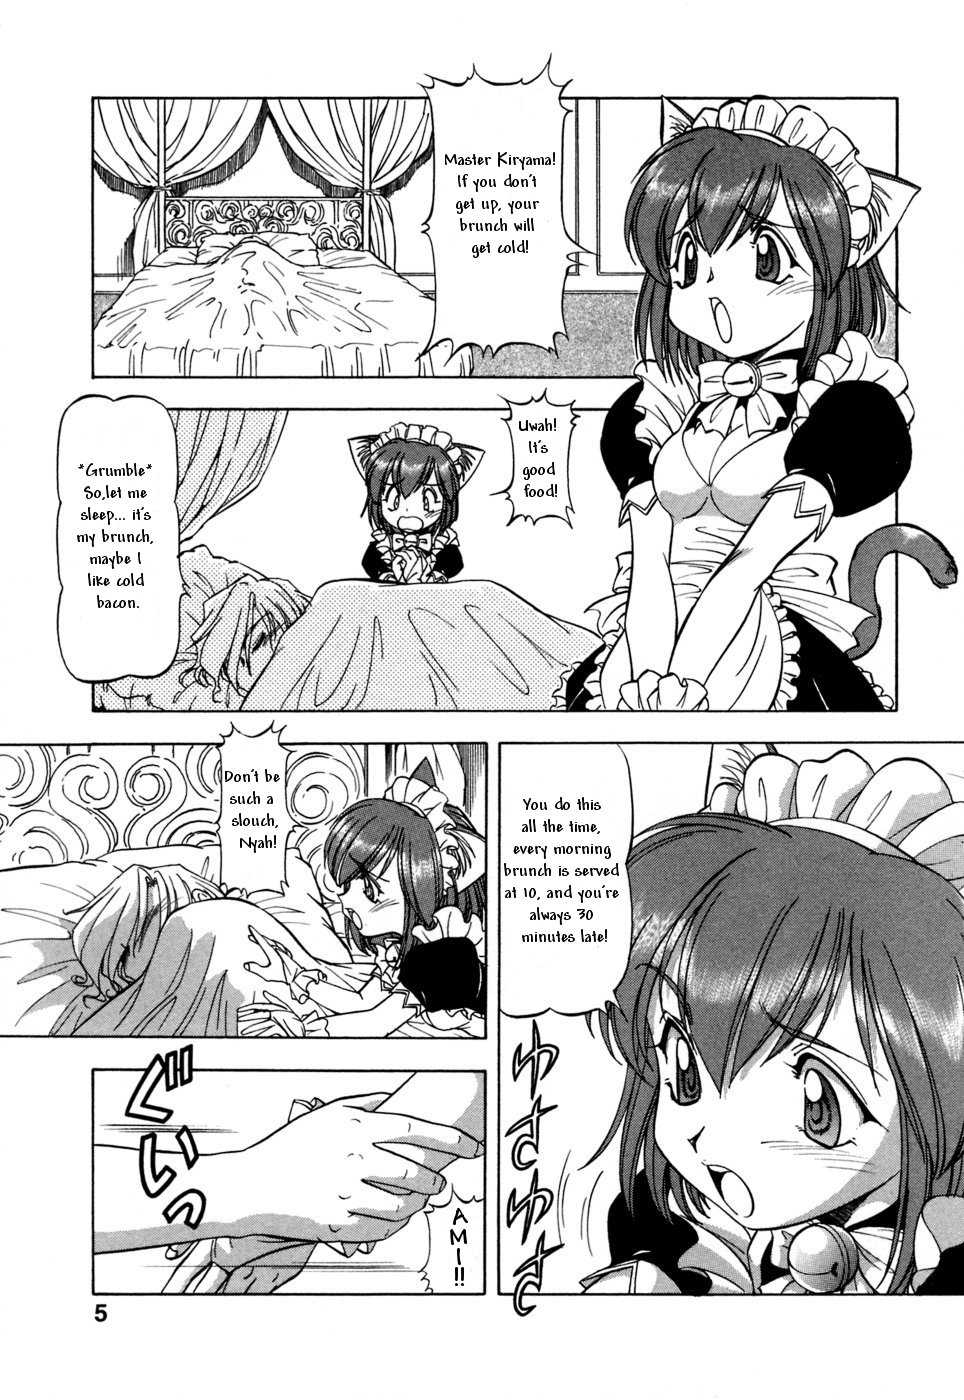 [Mesu Neko] Cat Maids Story ENG (incest) 